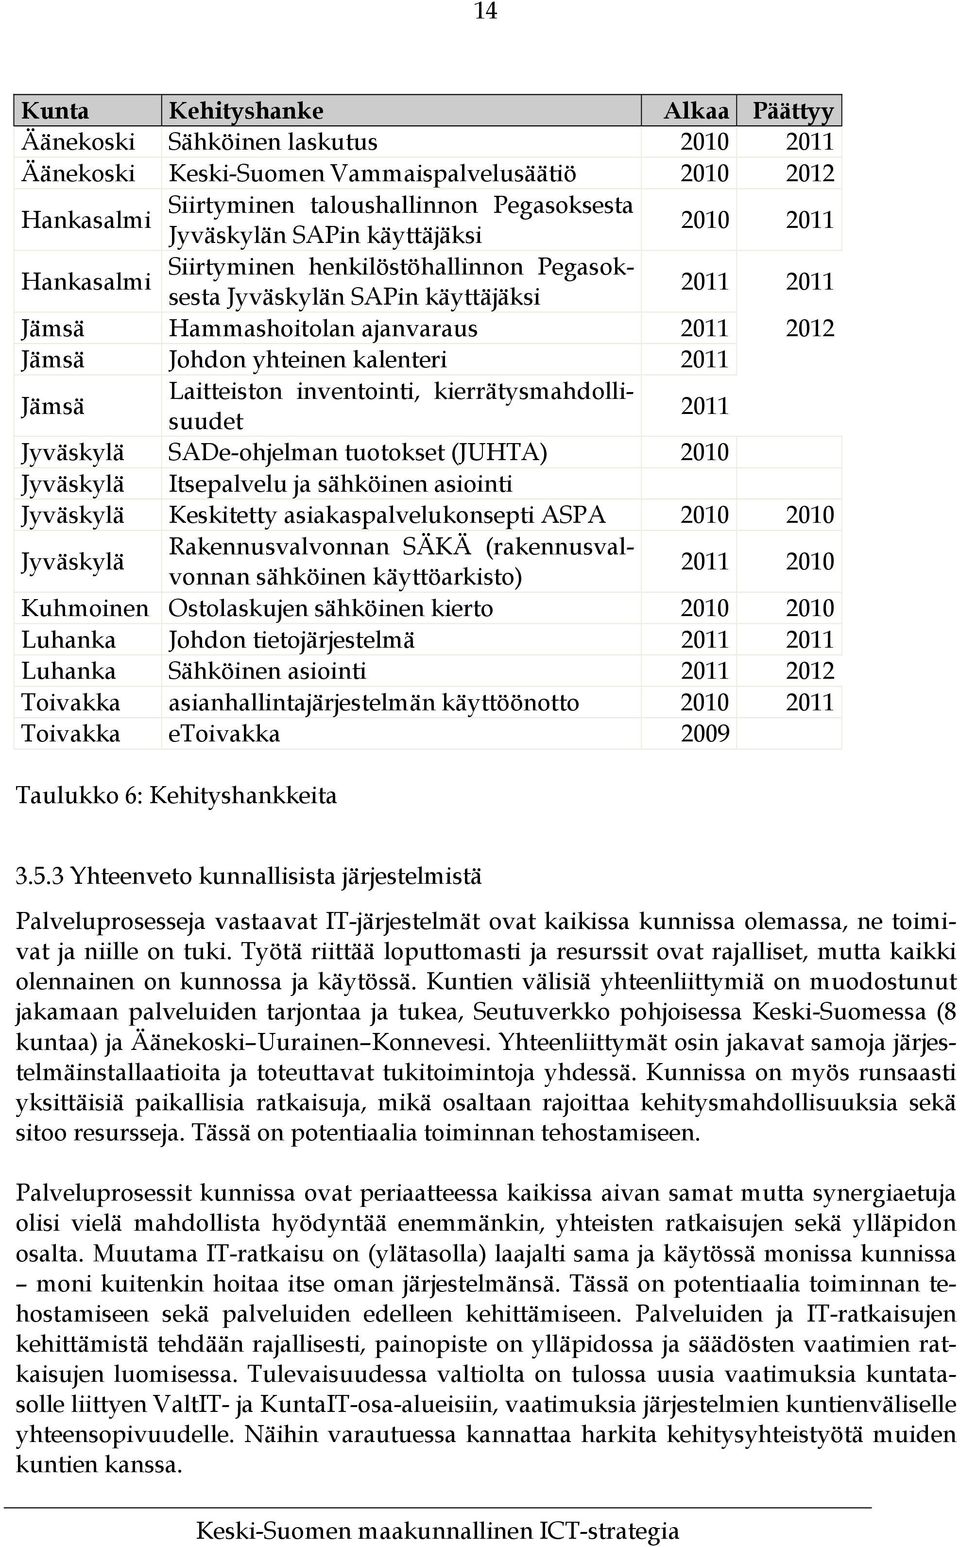 Jämsä Laitteiston inventointi, kierrätysmahdollisuudet 2011 Jyväskylä SADe-ohjelman tuotokset (JUHTA) 2010 Jyväskylä Itsepalvelu ja sähköinen asiointi Jyväskylä Keskitetty asiakaspalvelukonsepti ASPA